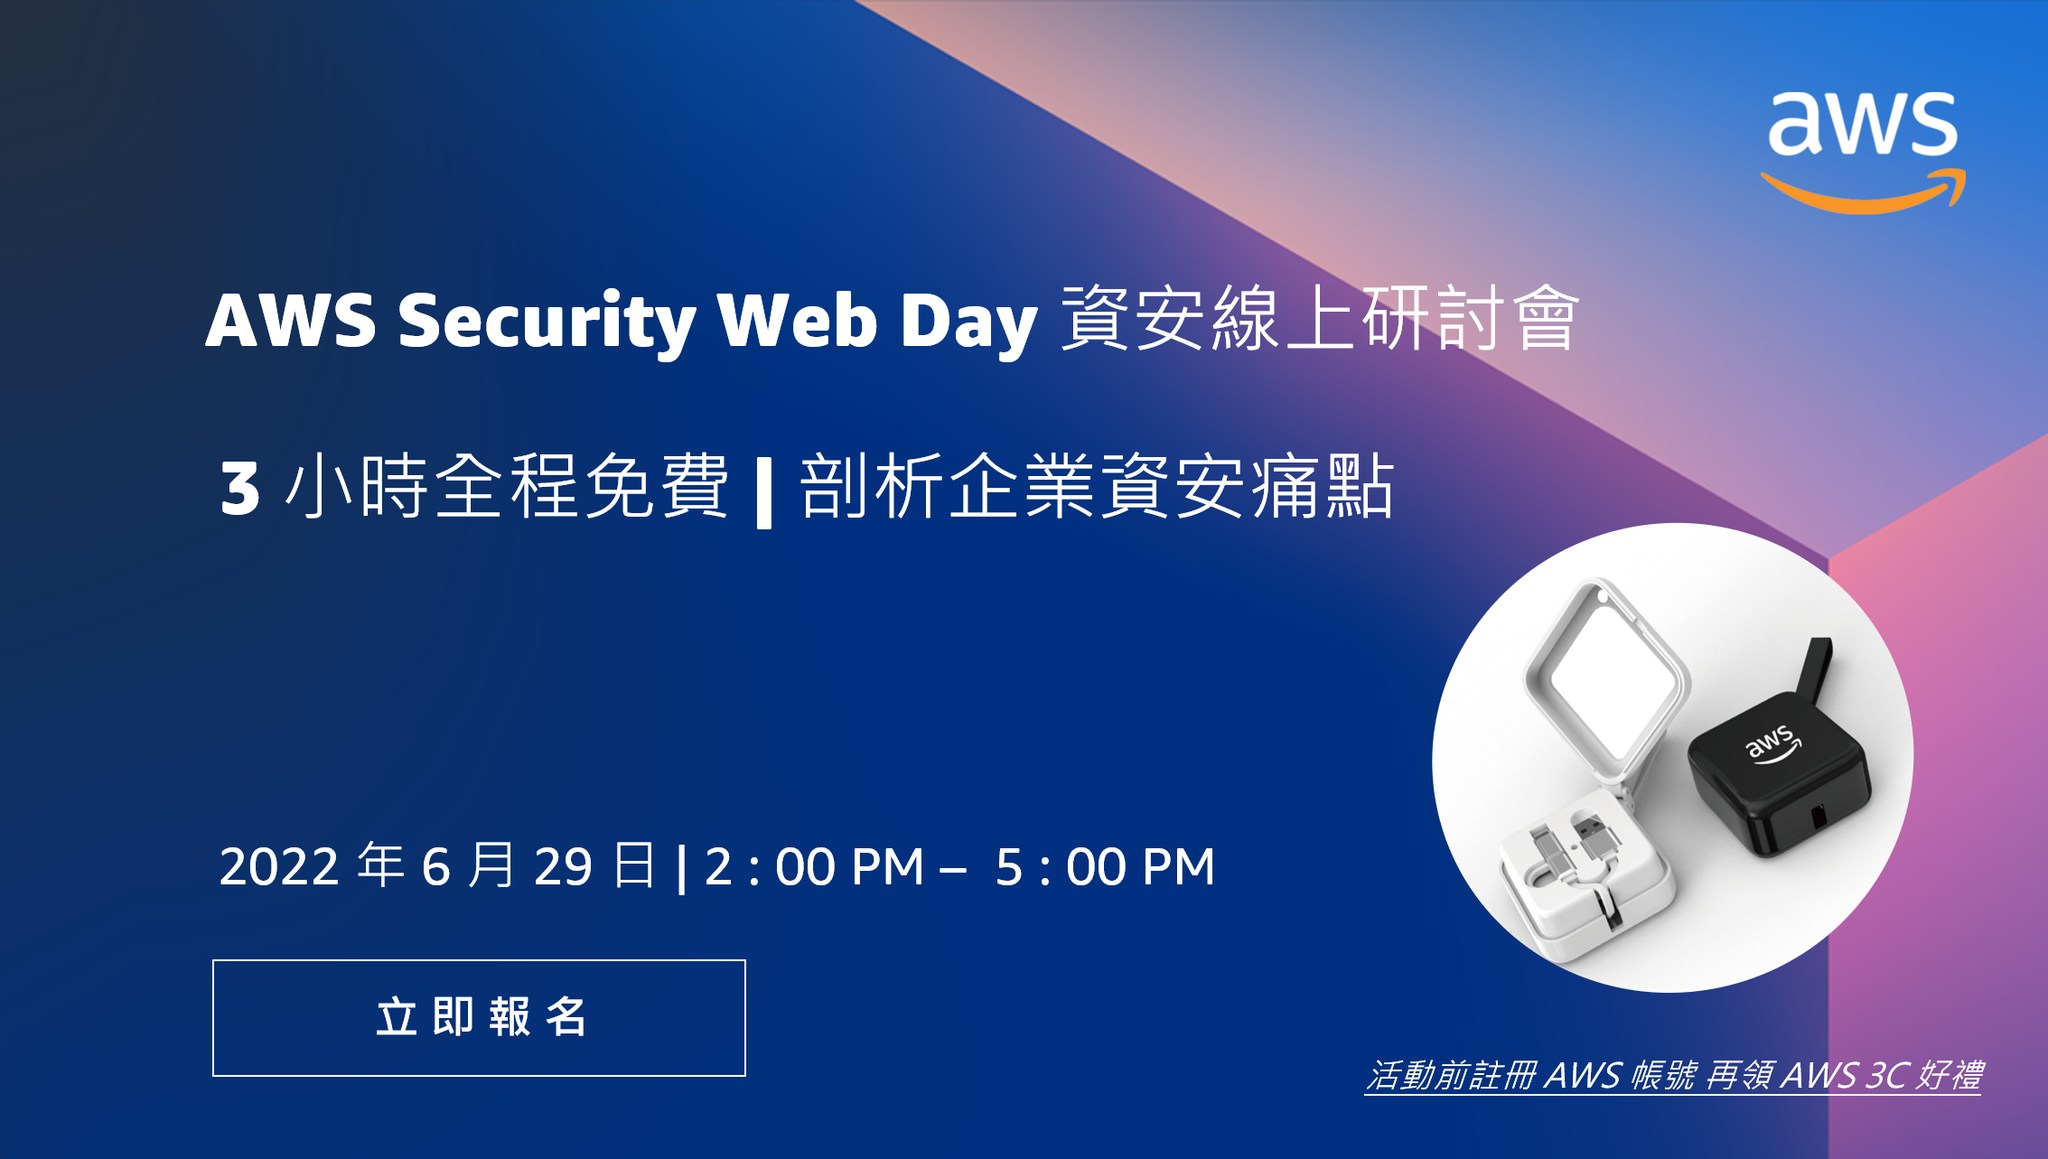 【雲端活動】網創受邀擔任講師 - 2022 AWS Security Web Day 資訊安全線上研討會